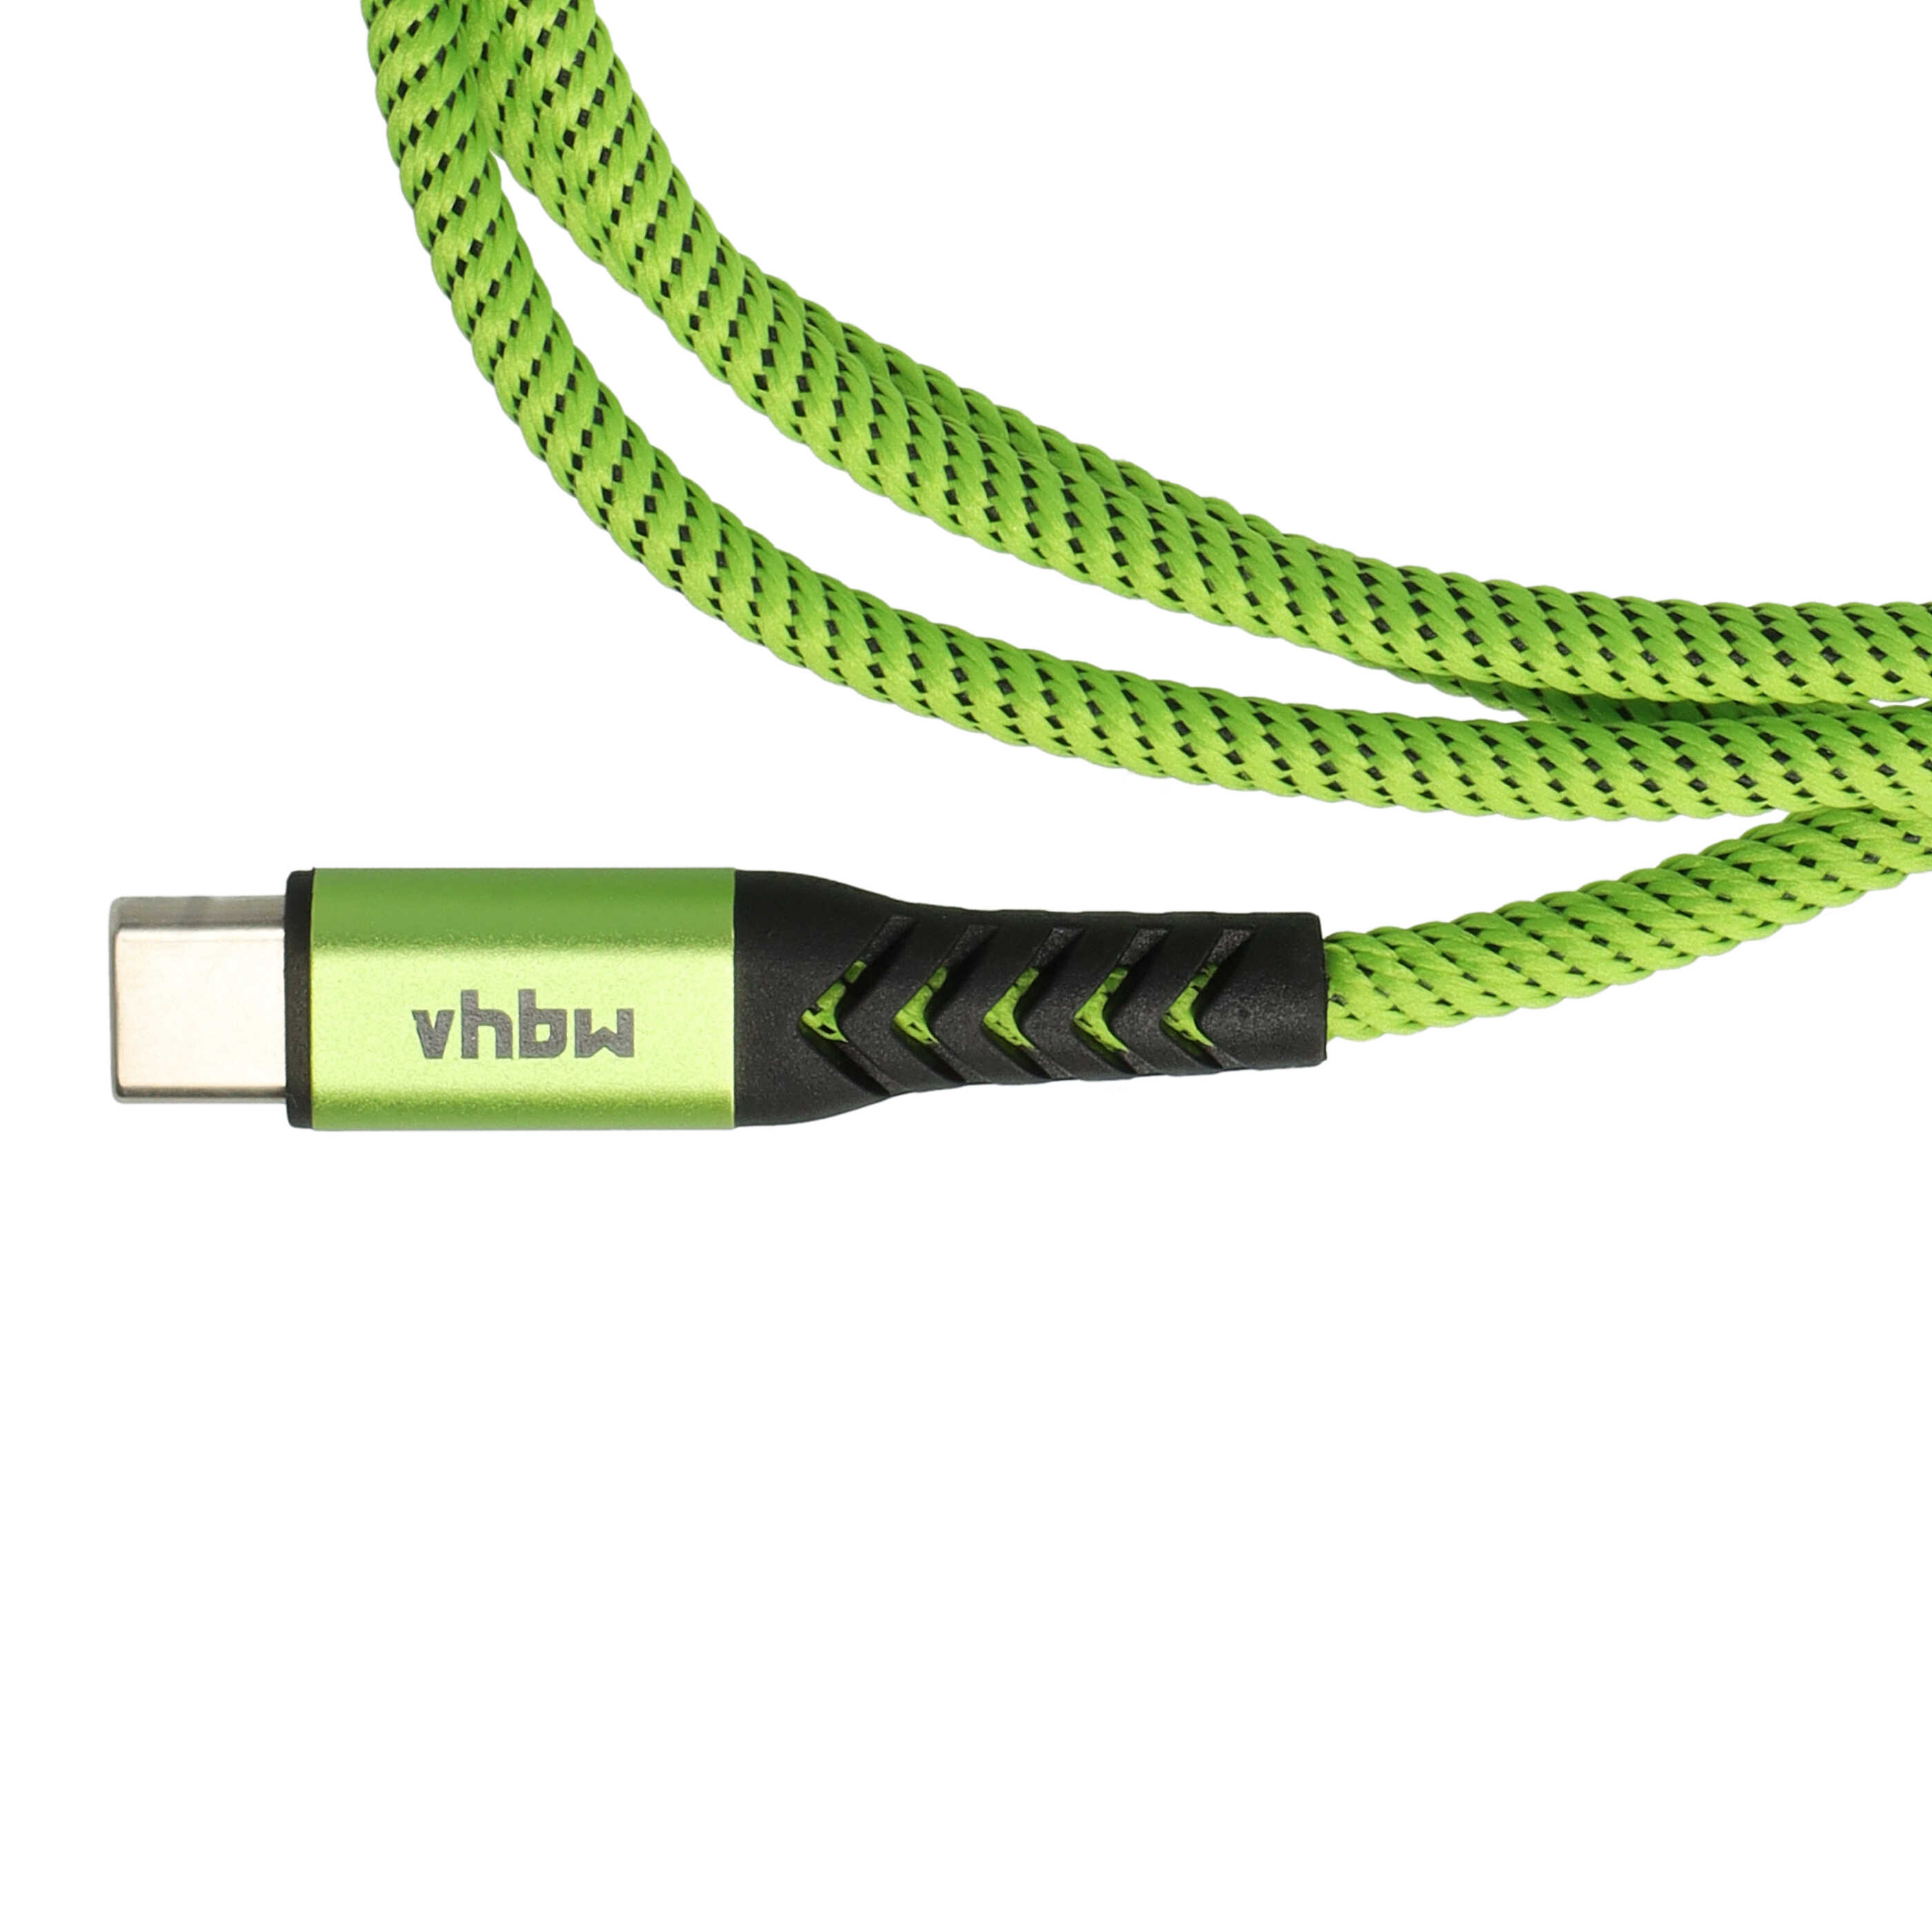 Cavo lightning - USB C, Thunderbolt 3 per dispositivi Apple iOS - nero / verde, 100cm